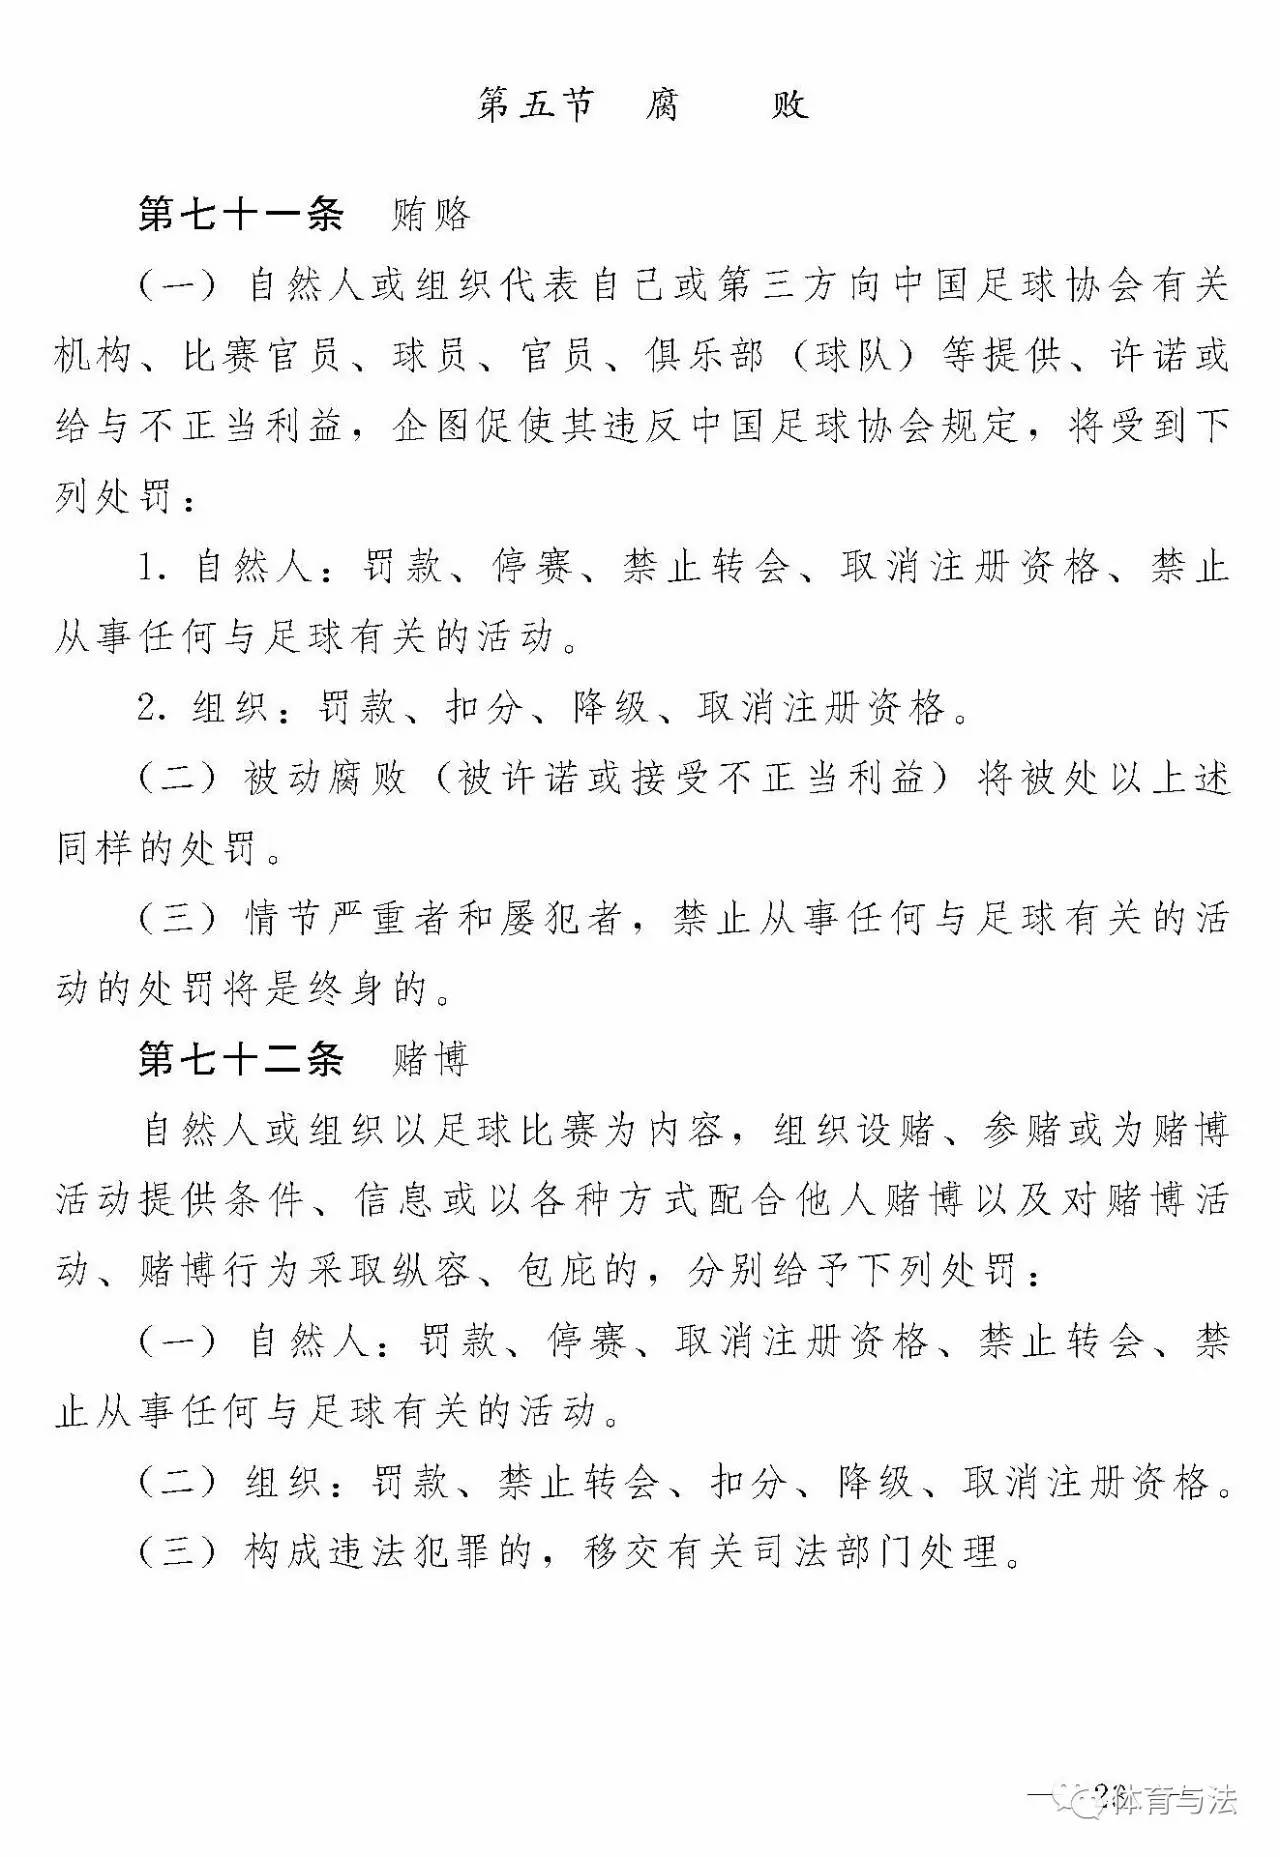 中国足球协会关于印发《中国足球协会纪律准则